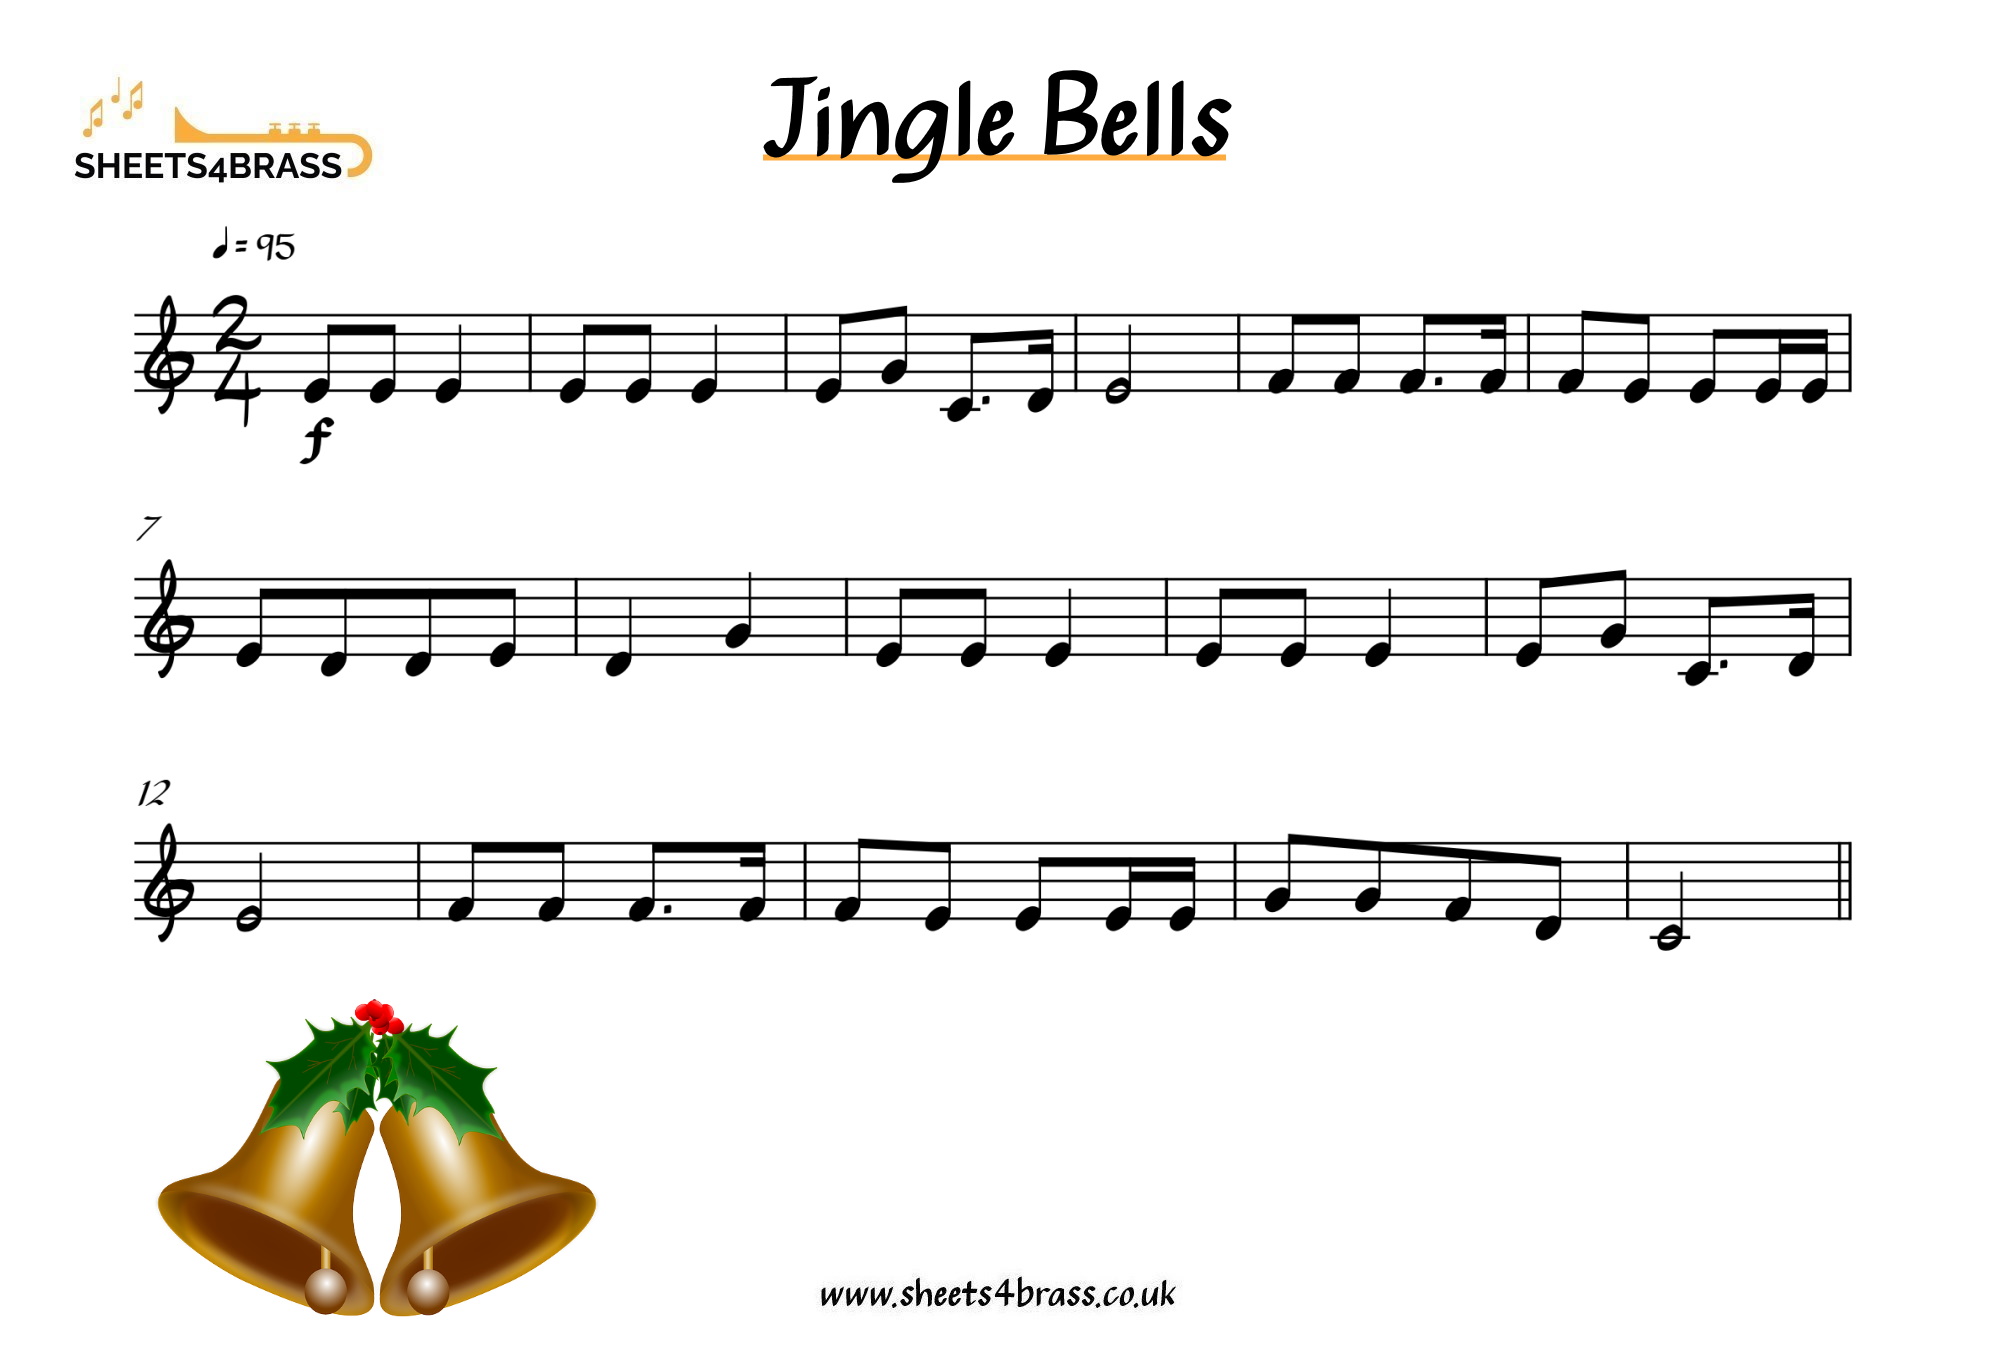 Jingle Bells - Sheet Music for Brass sheets4brass